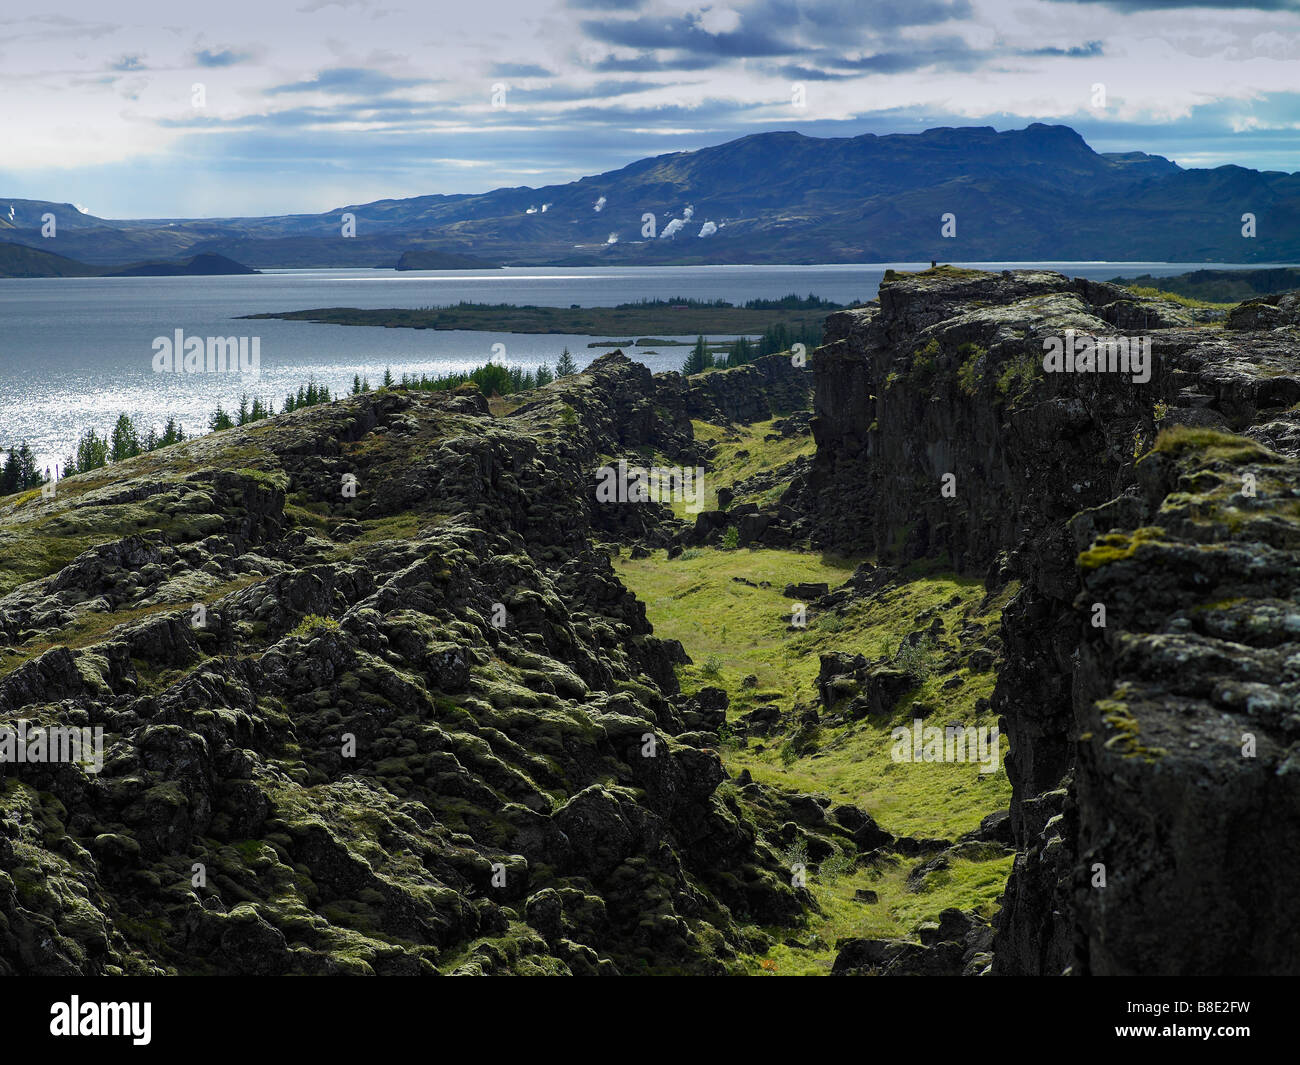 Lava landscape with earthquake cracks and Lake Thingvellir, Thingvellir National Park, Iceland Stock Photo